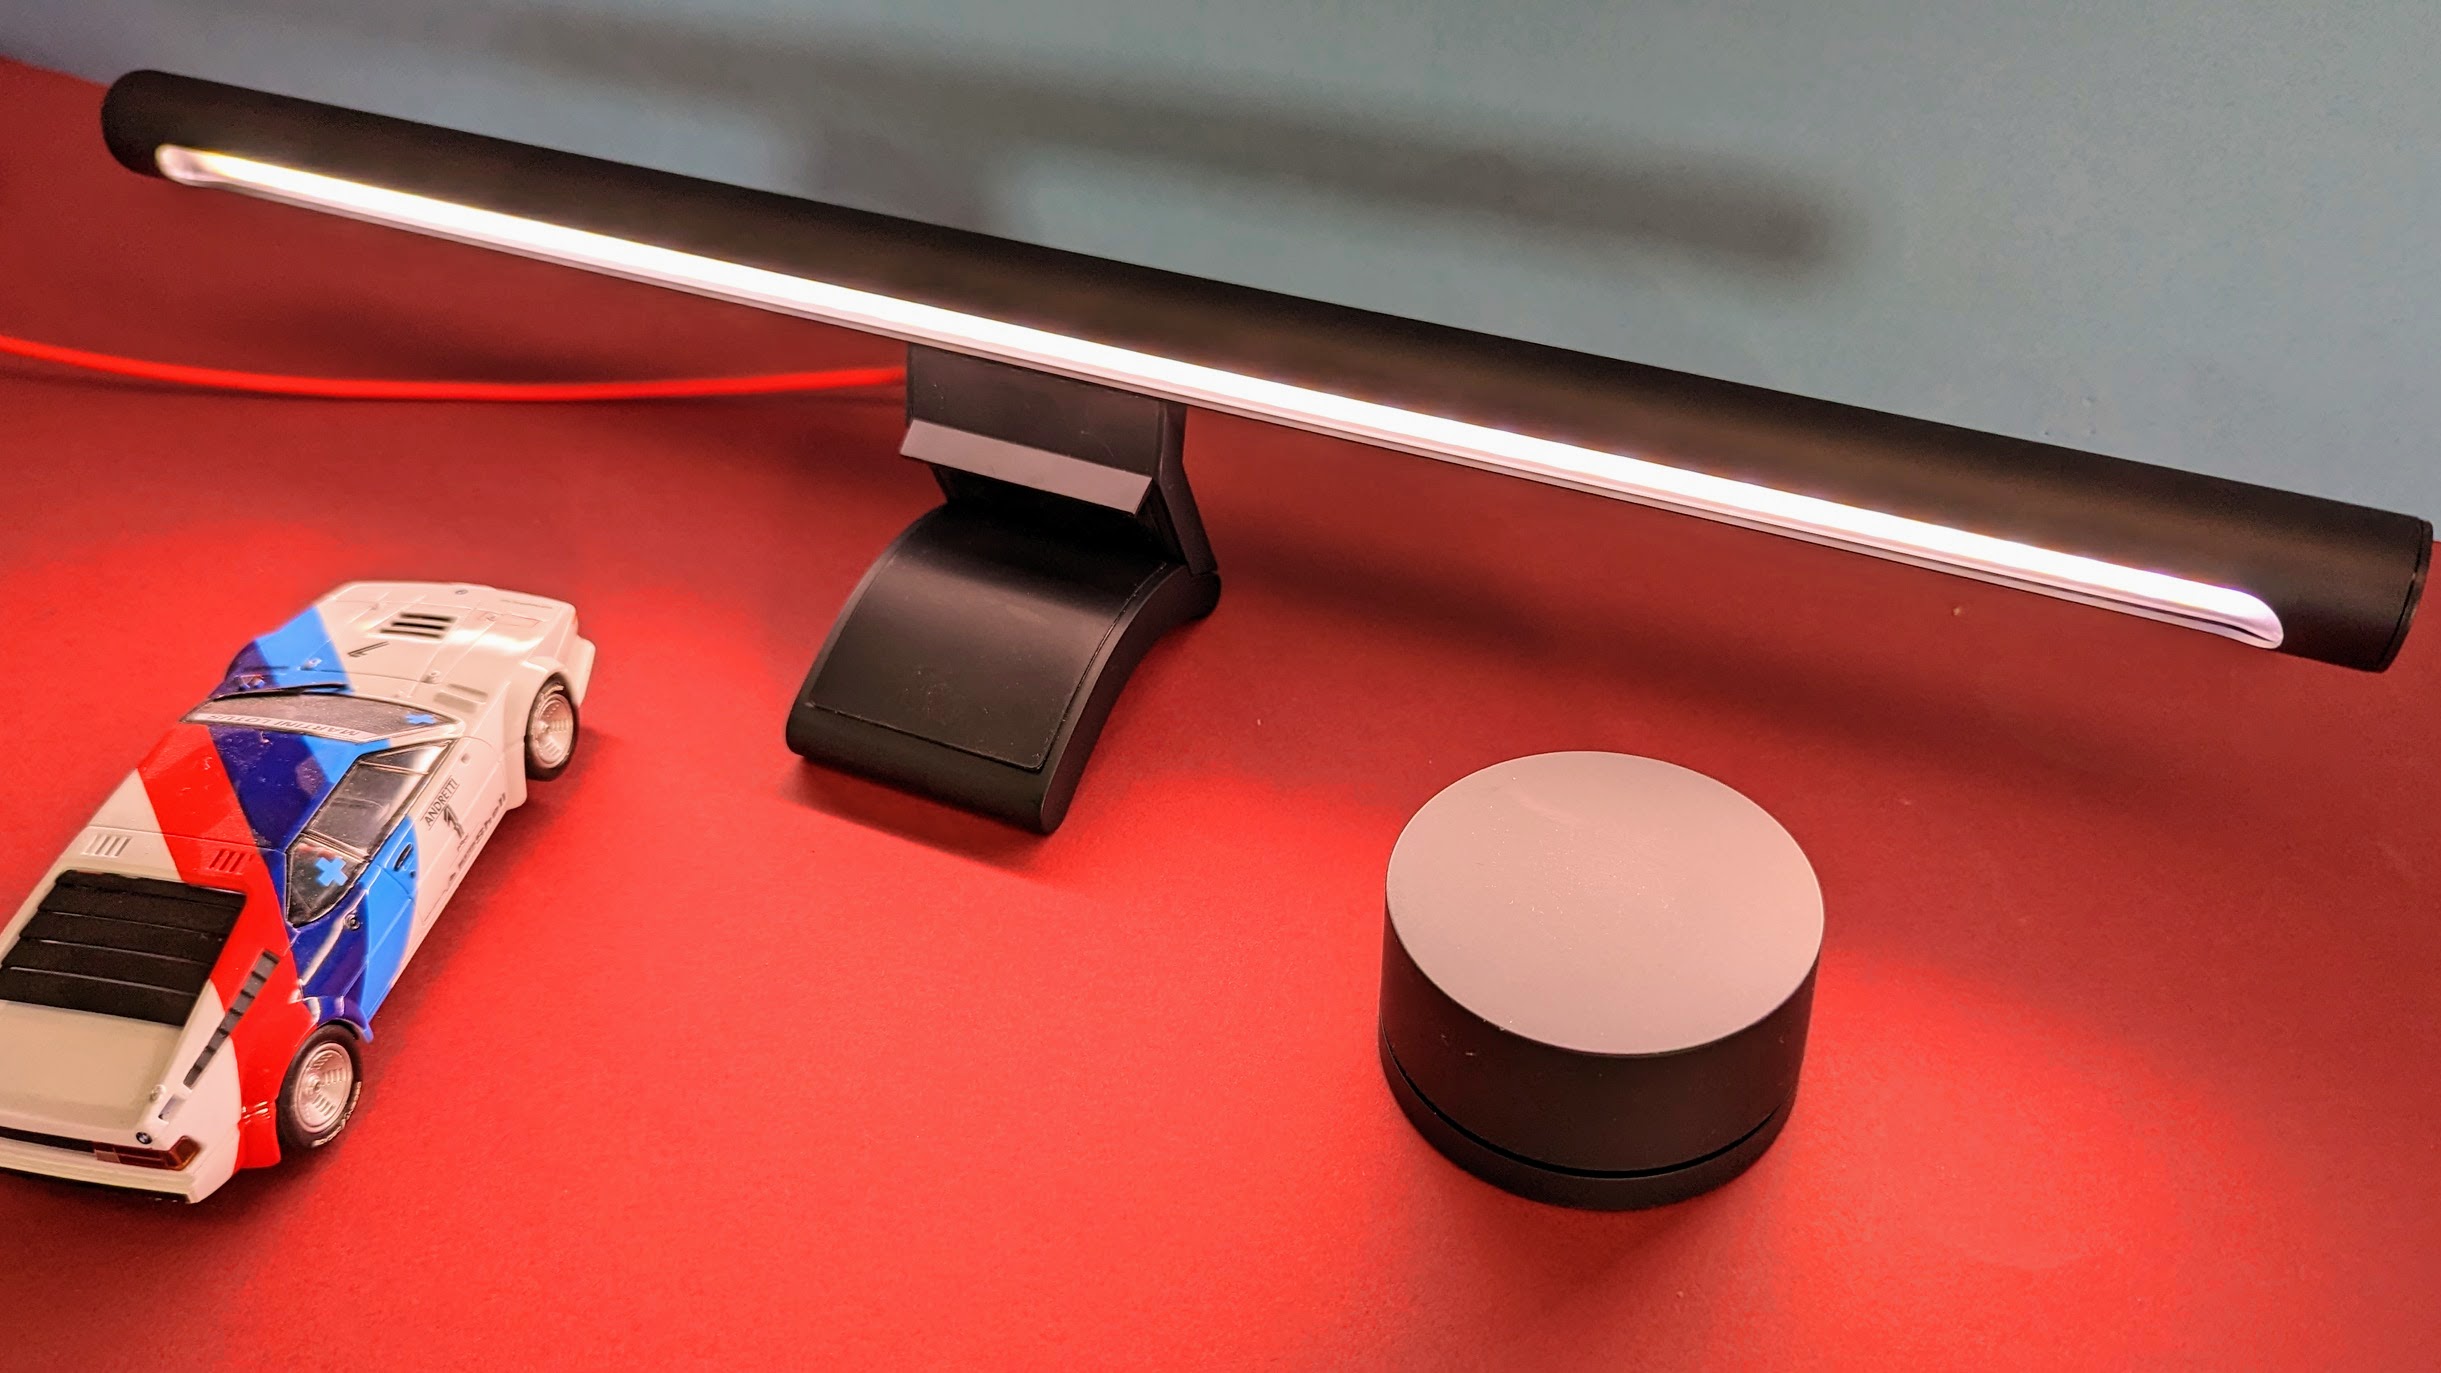 Xiaomi Mi Monitorlampe im Test: Preis-Leistungs-Tipp mit perfektem Licht